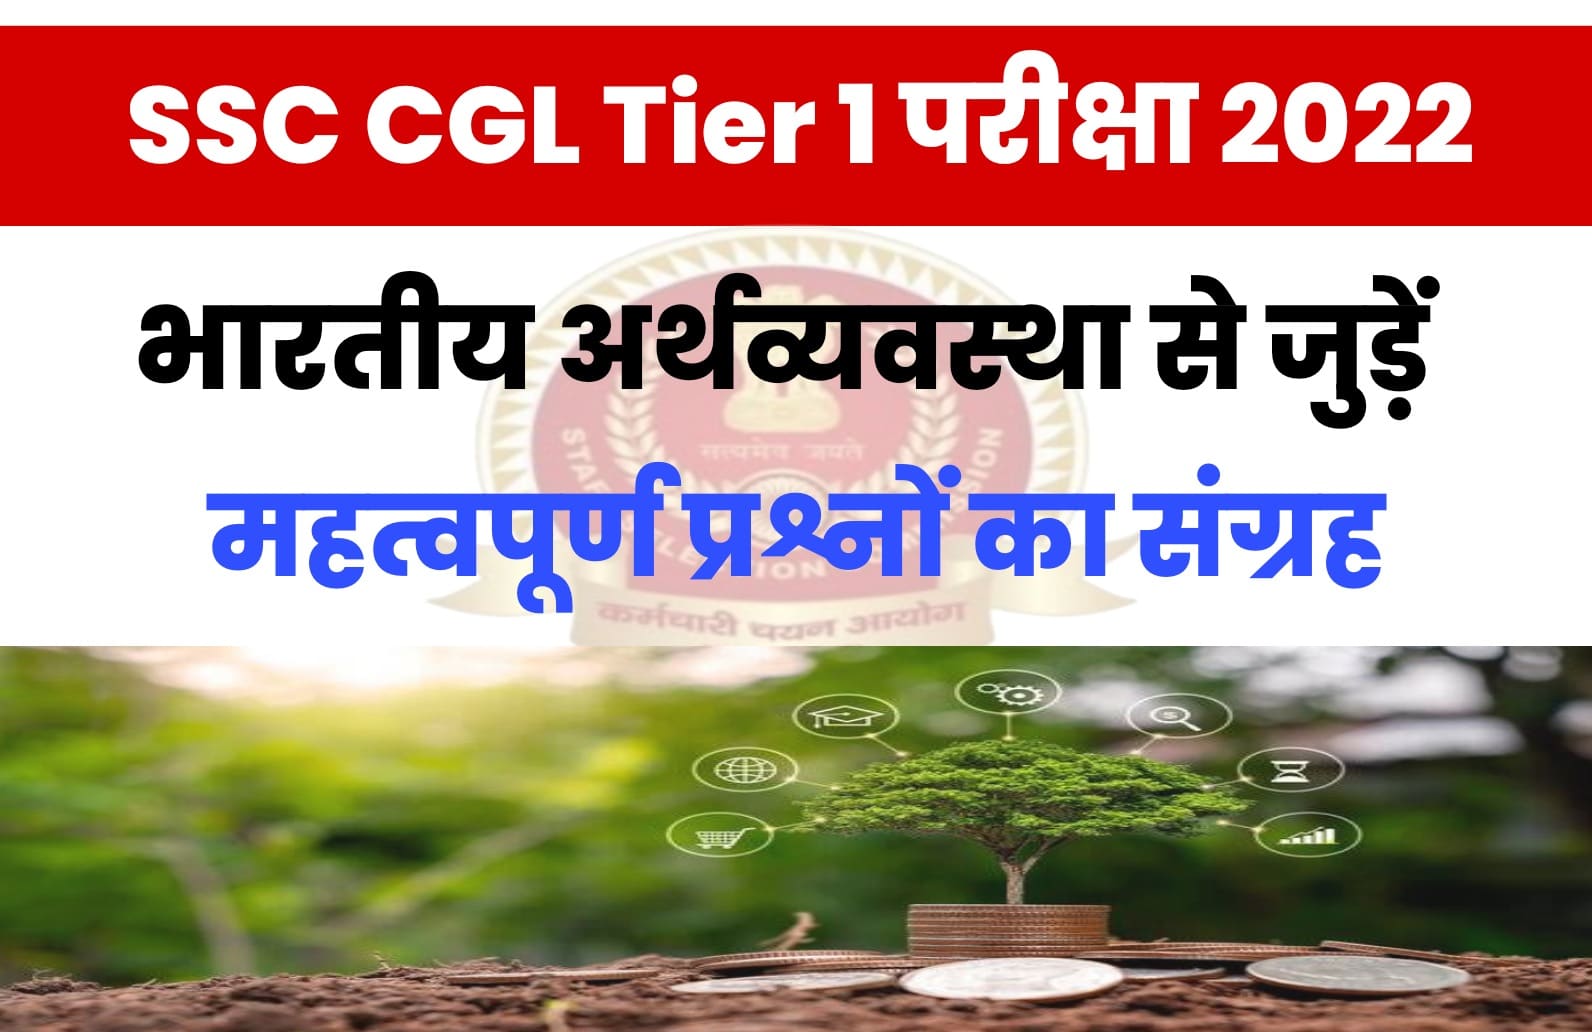 SSC CGL Tier I Exam 2022 | भारतीय अर्थव्यवस्था से जुड़ें कुछ बेहद महत्वपूर्ण प्रश्न जो परीक्षा में पूछे जा सकते हैं, एक बार जरुर पढ़ें